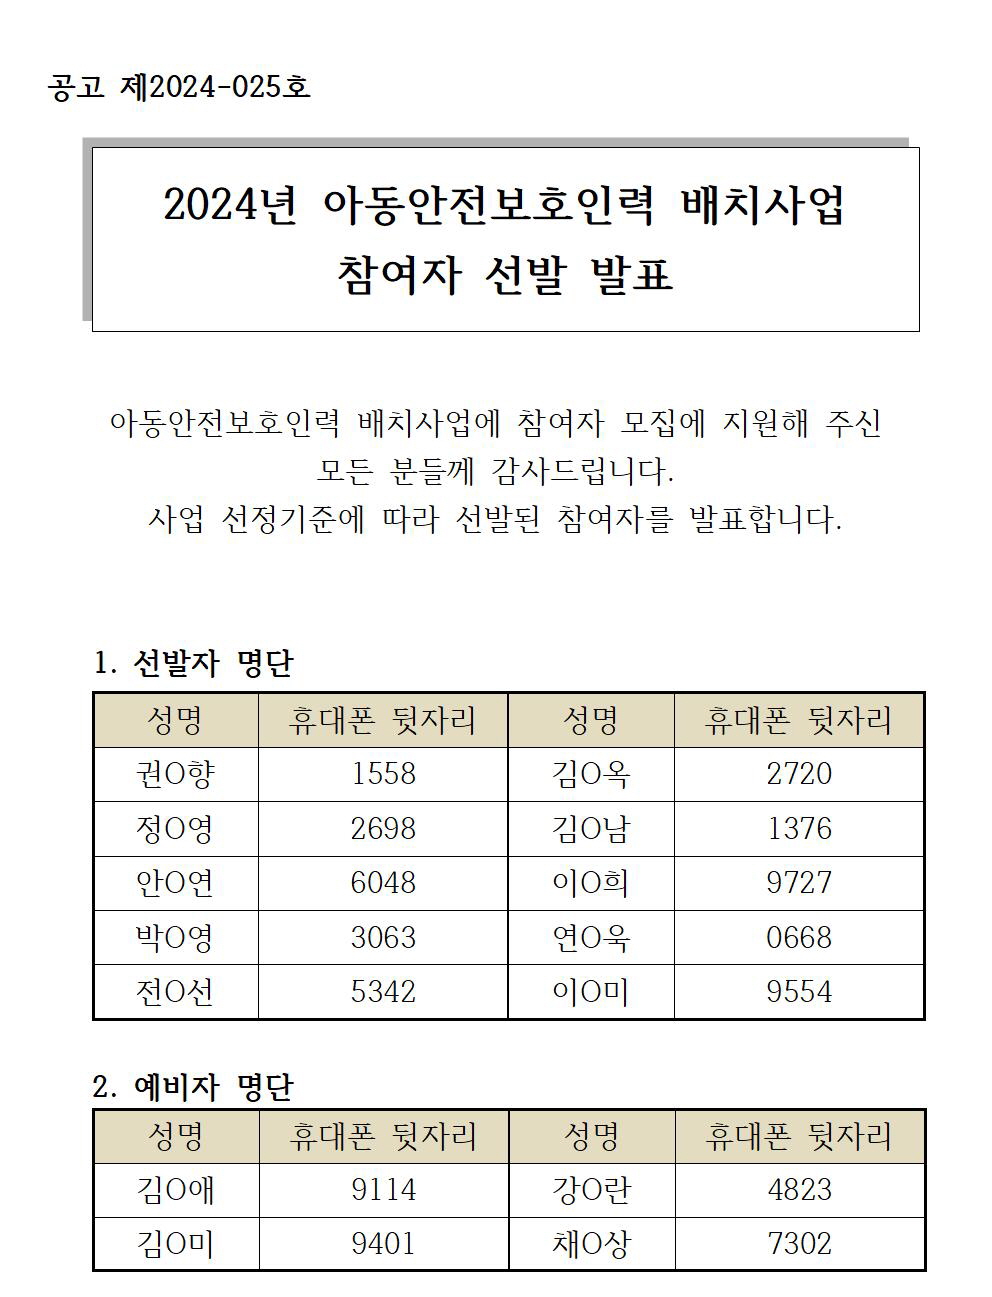 [꾸미기]122.+참여자+선발+발표+공고(예비자포함)_업로드용.jpg